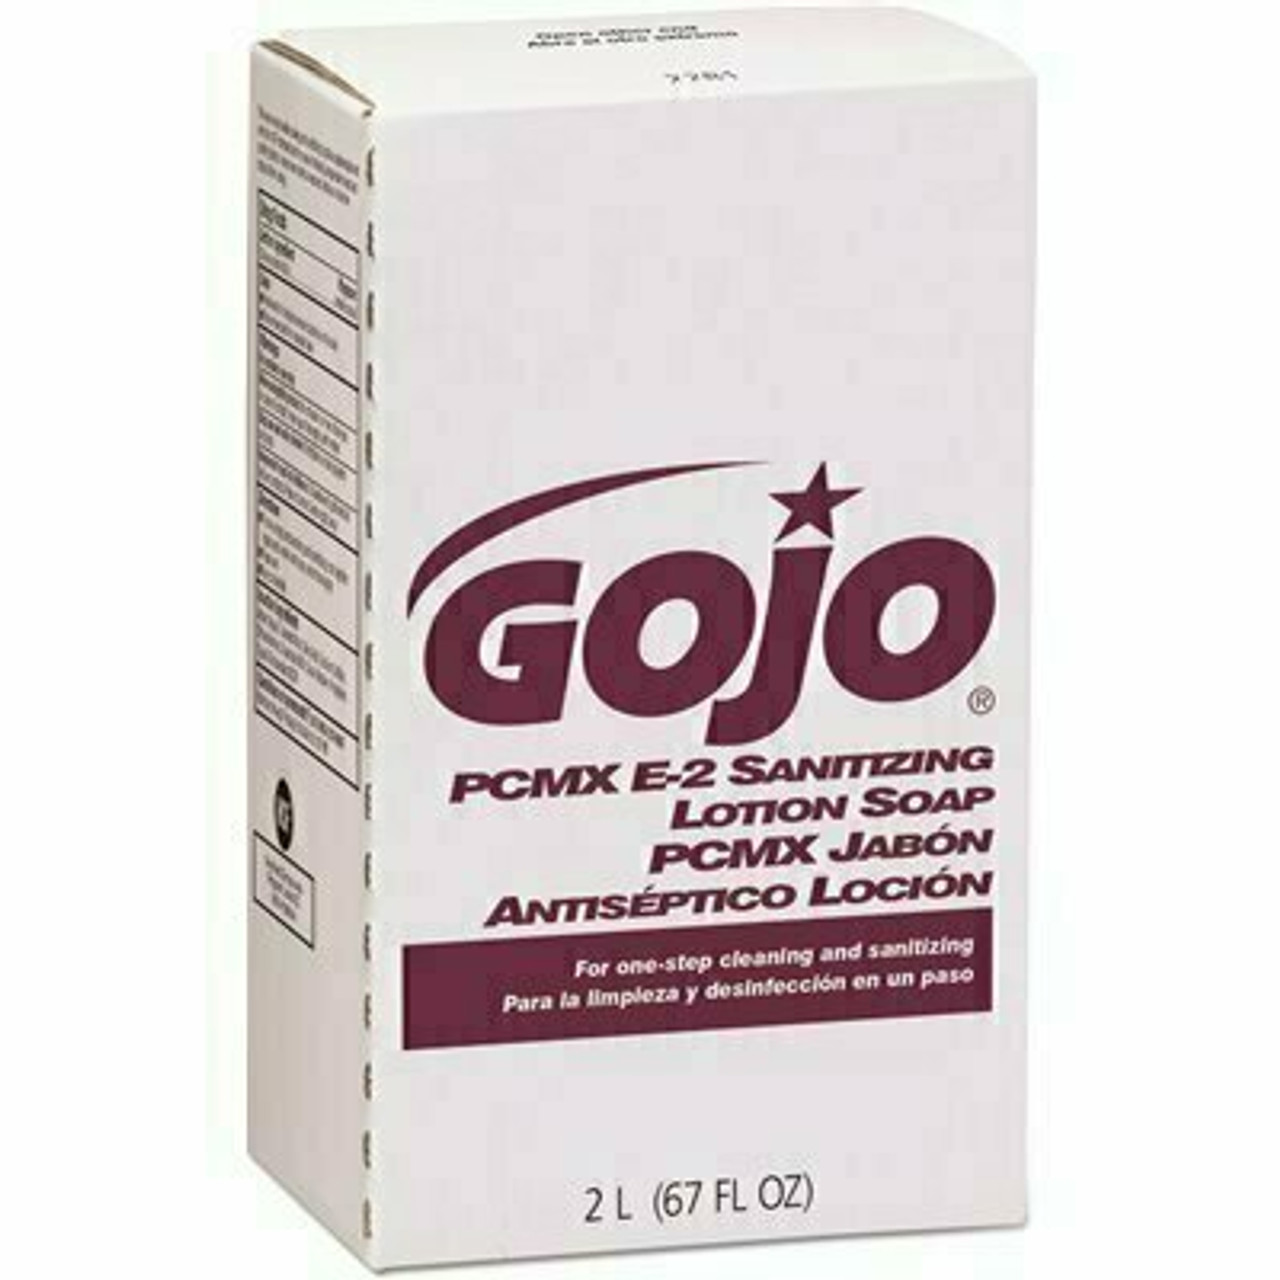 Gojo Pcmx E2 Sanitizing Lotion Soap, 2000 Ml Refill For Nxt Dispenser